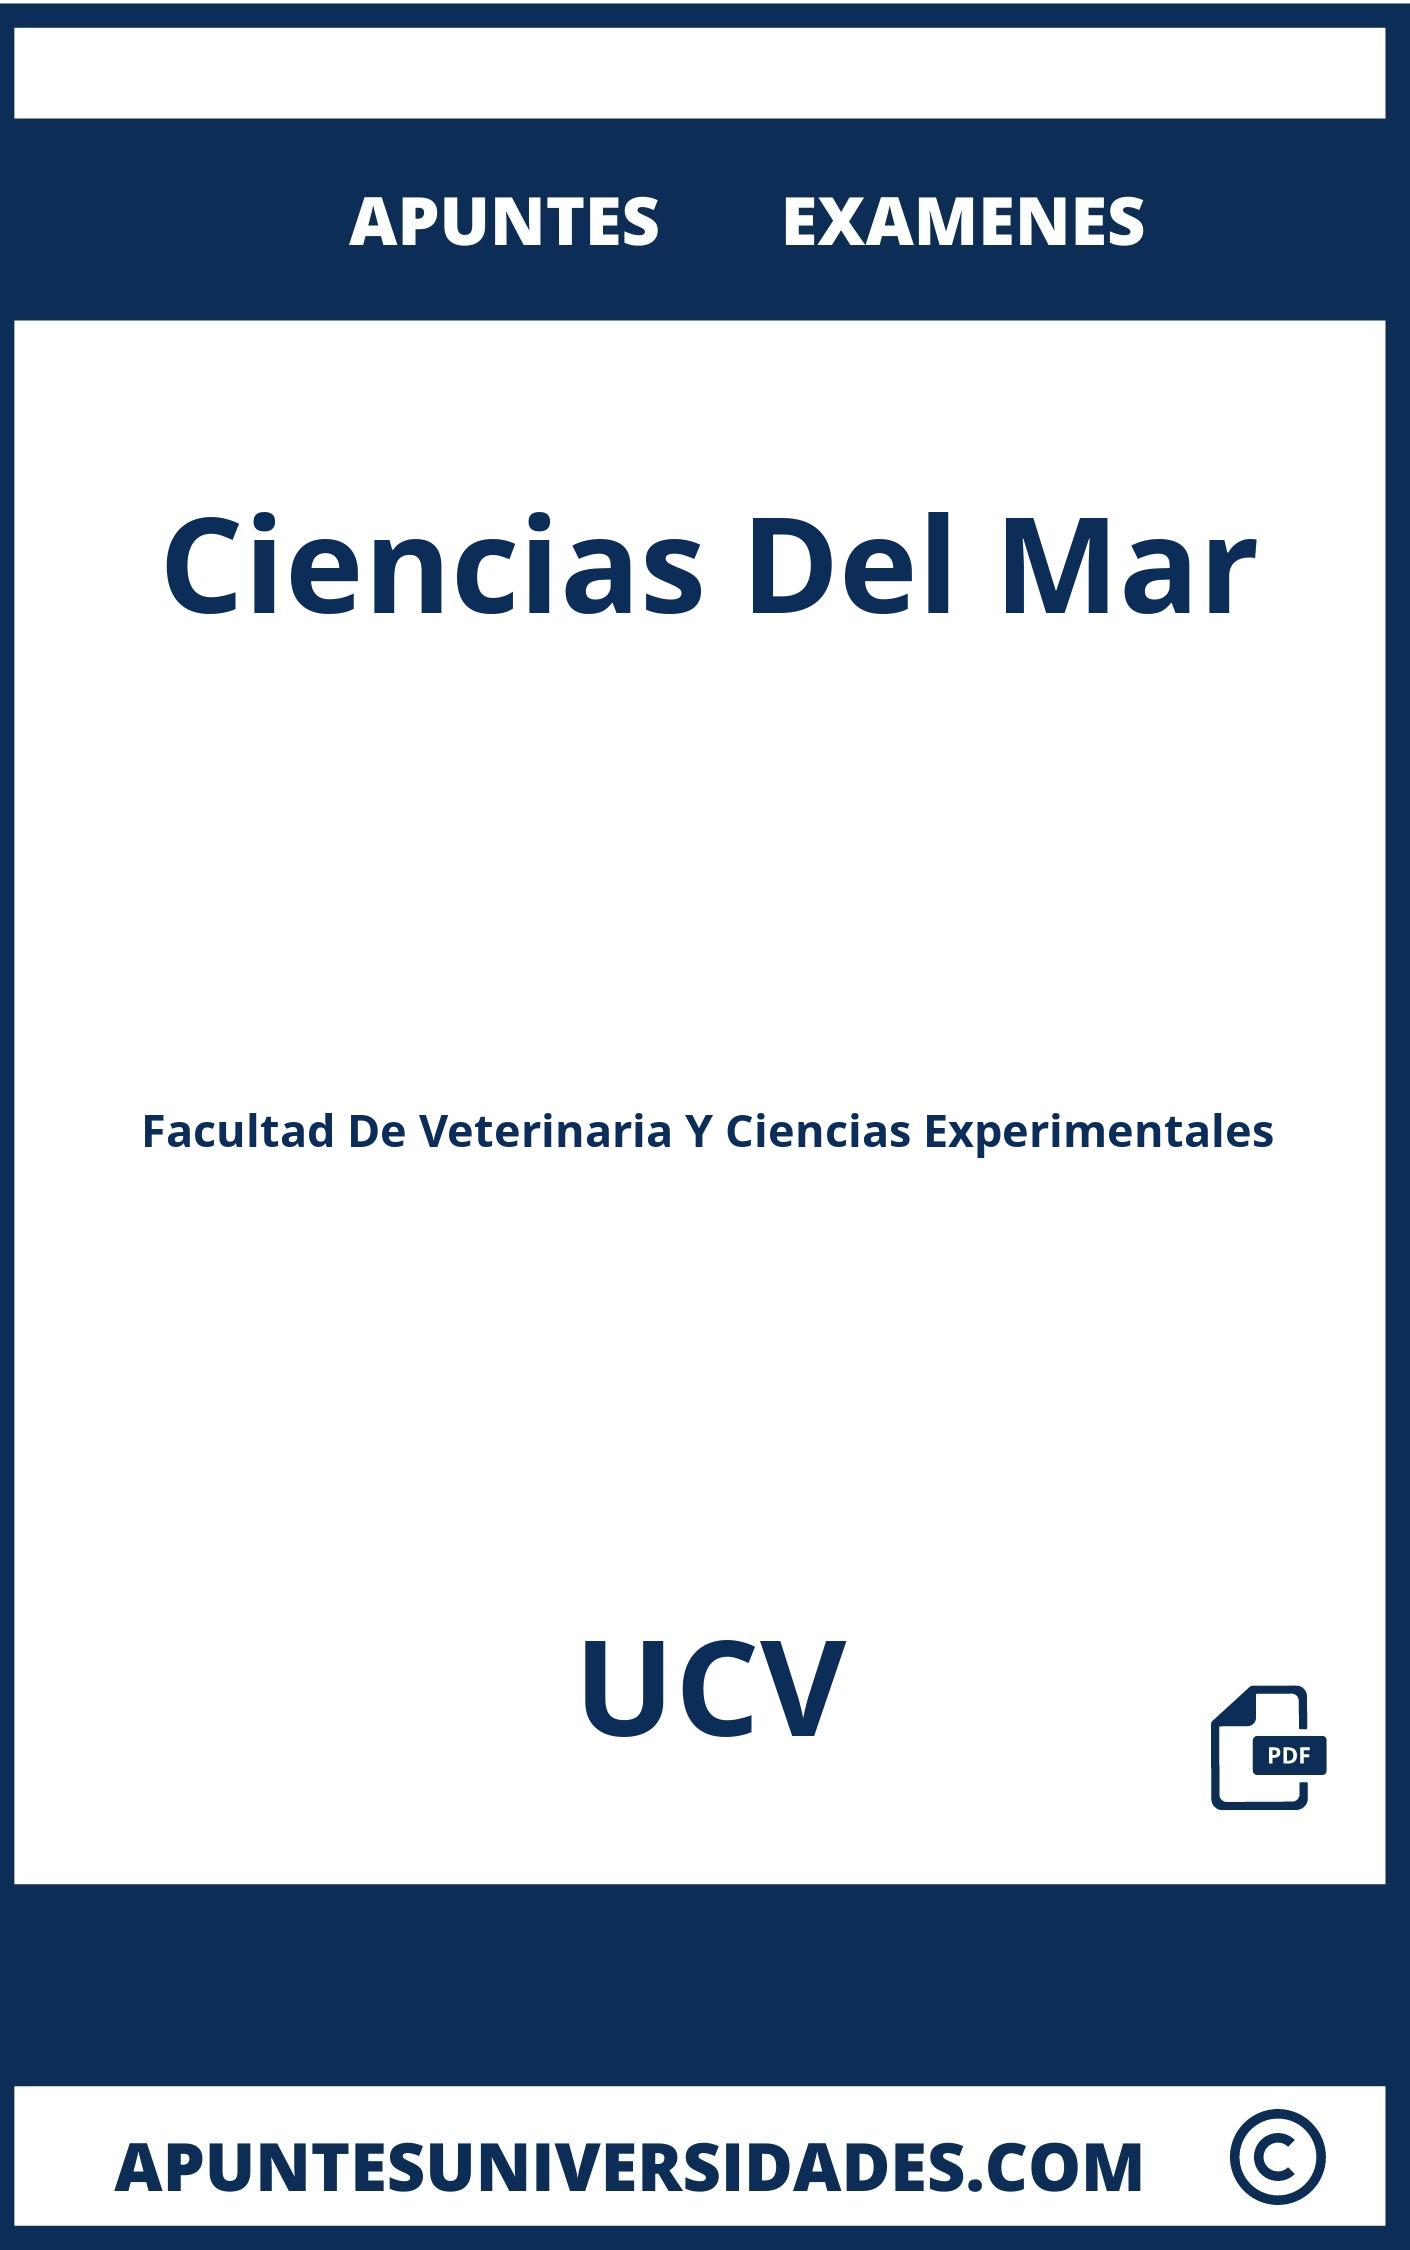 Examenes y Apuntes de Ciencias Del Mar UCV